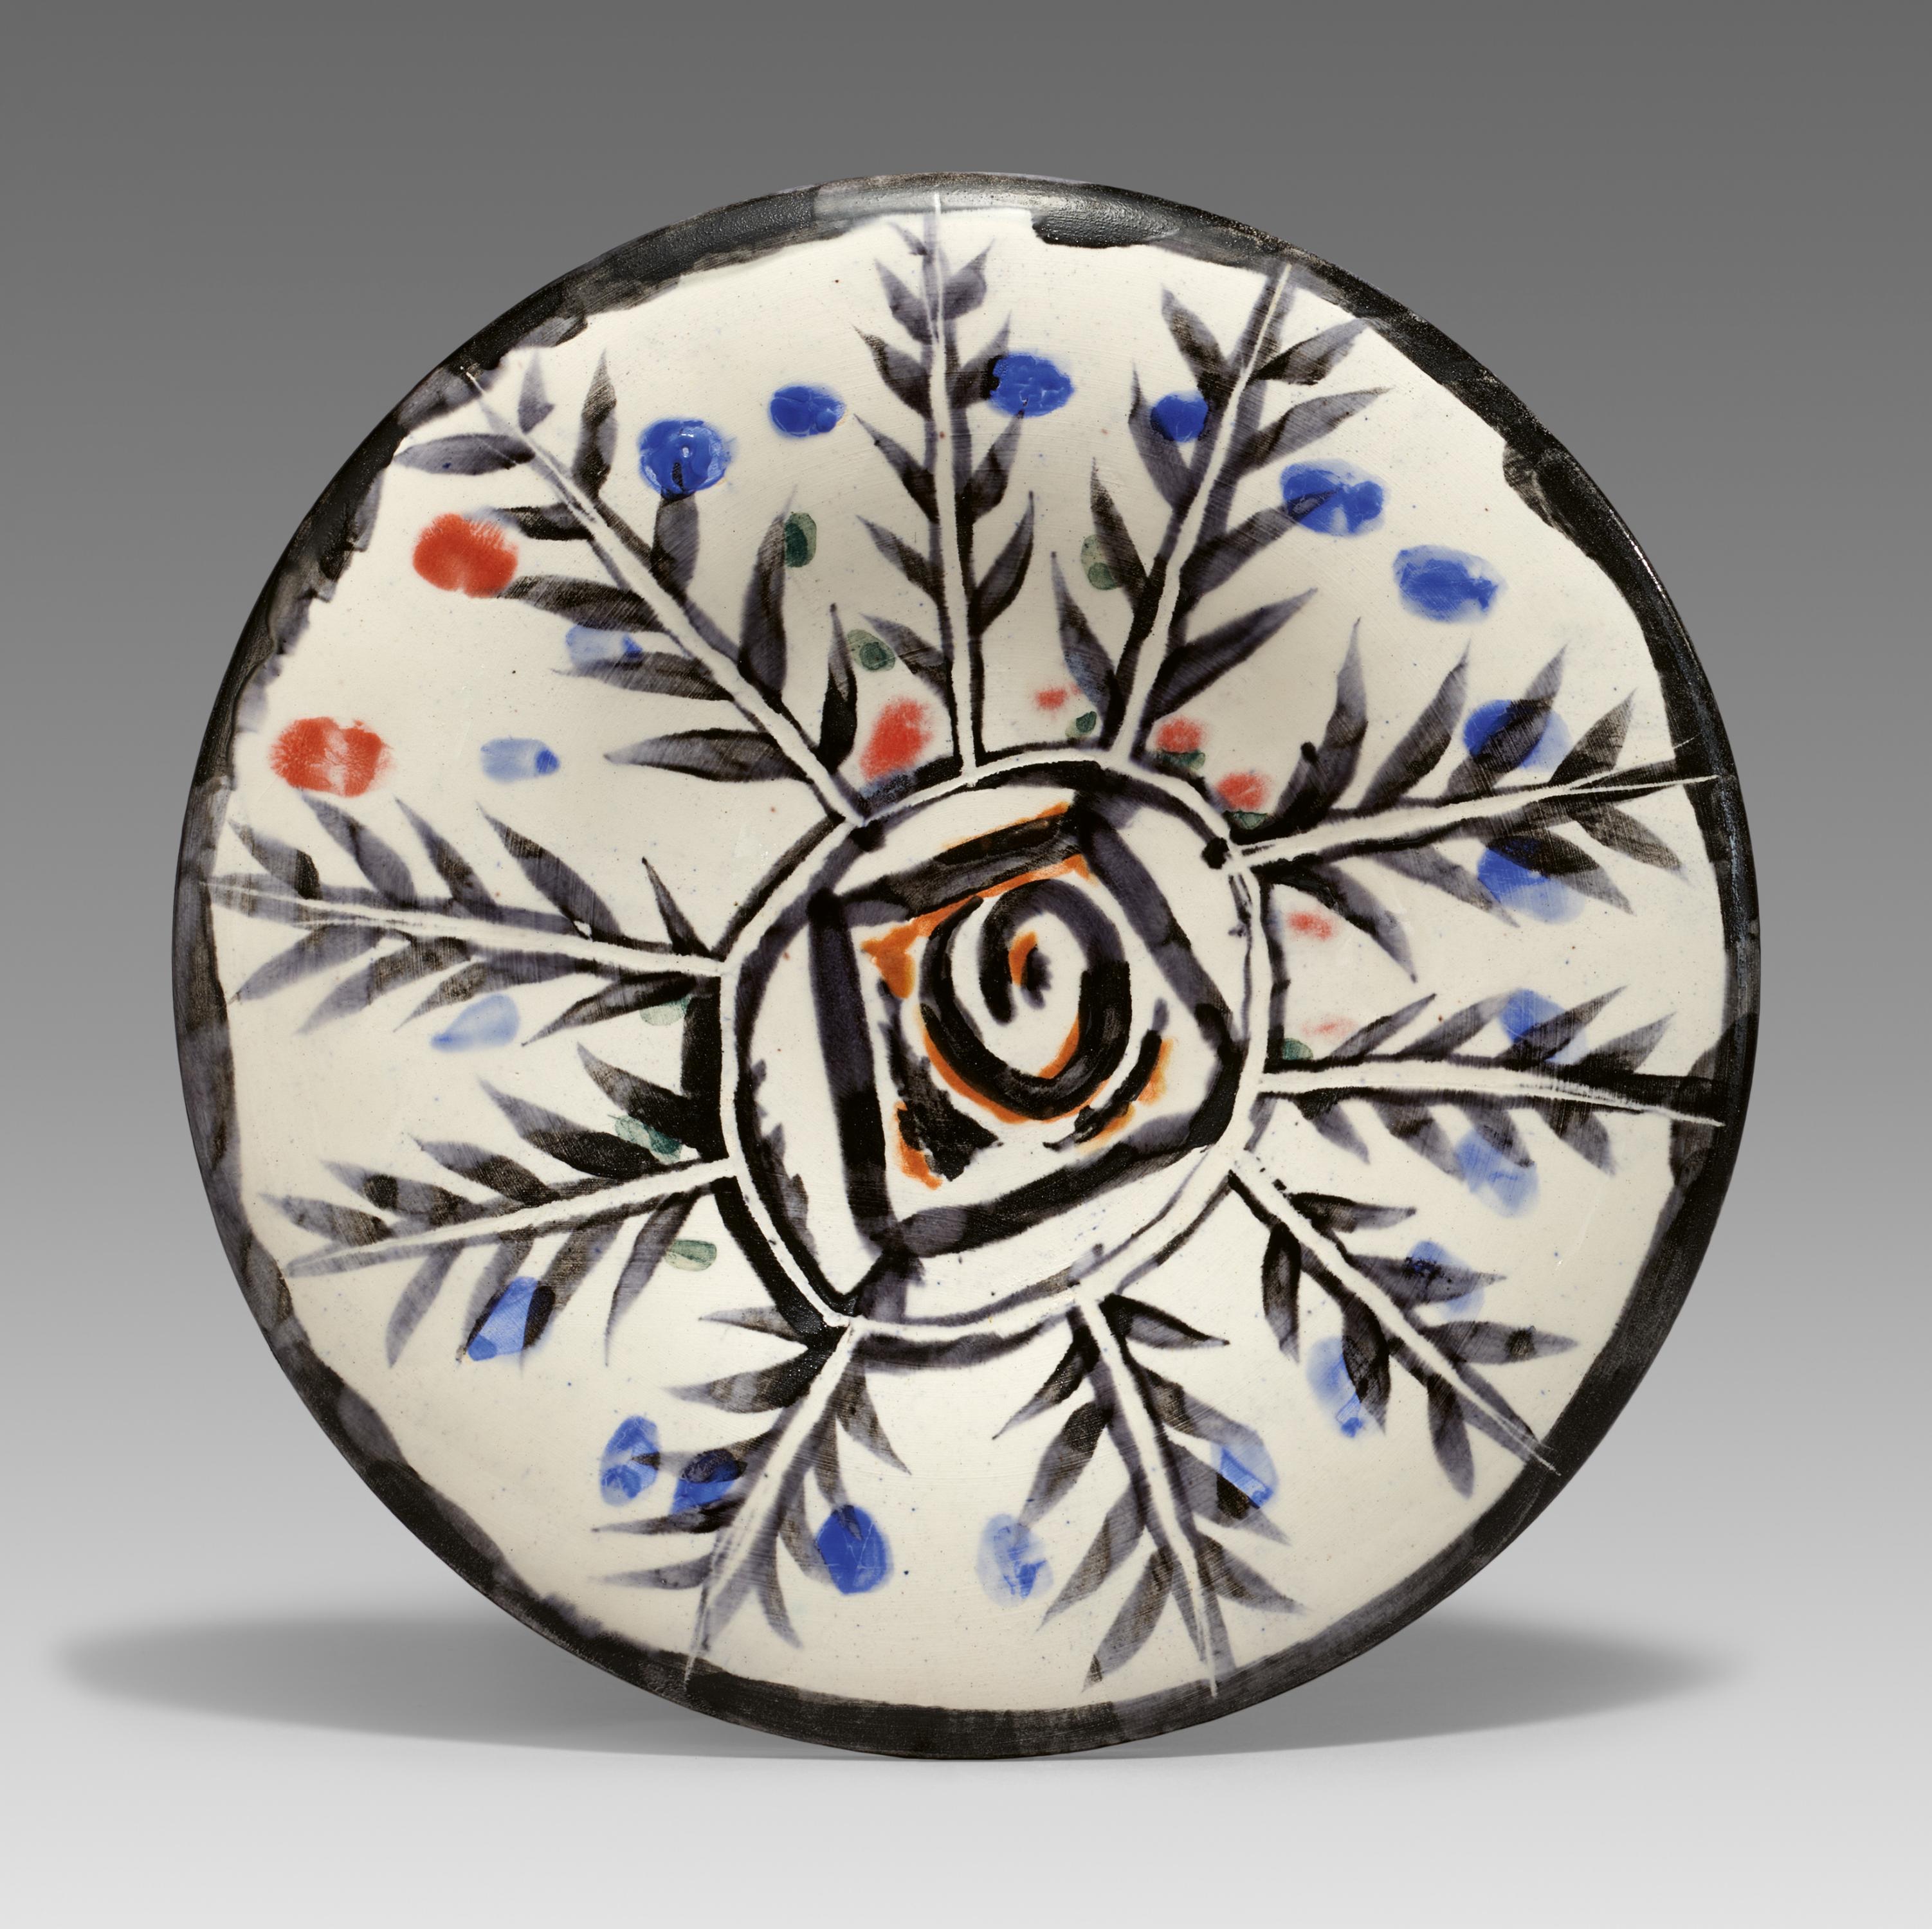 Pablo Picasso Ceramics: Motifs No. 7